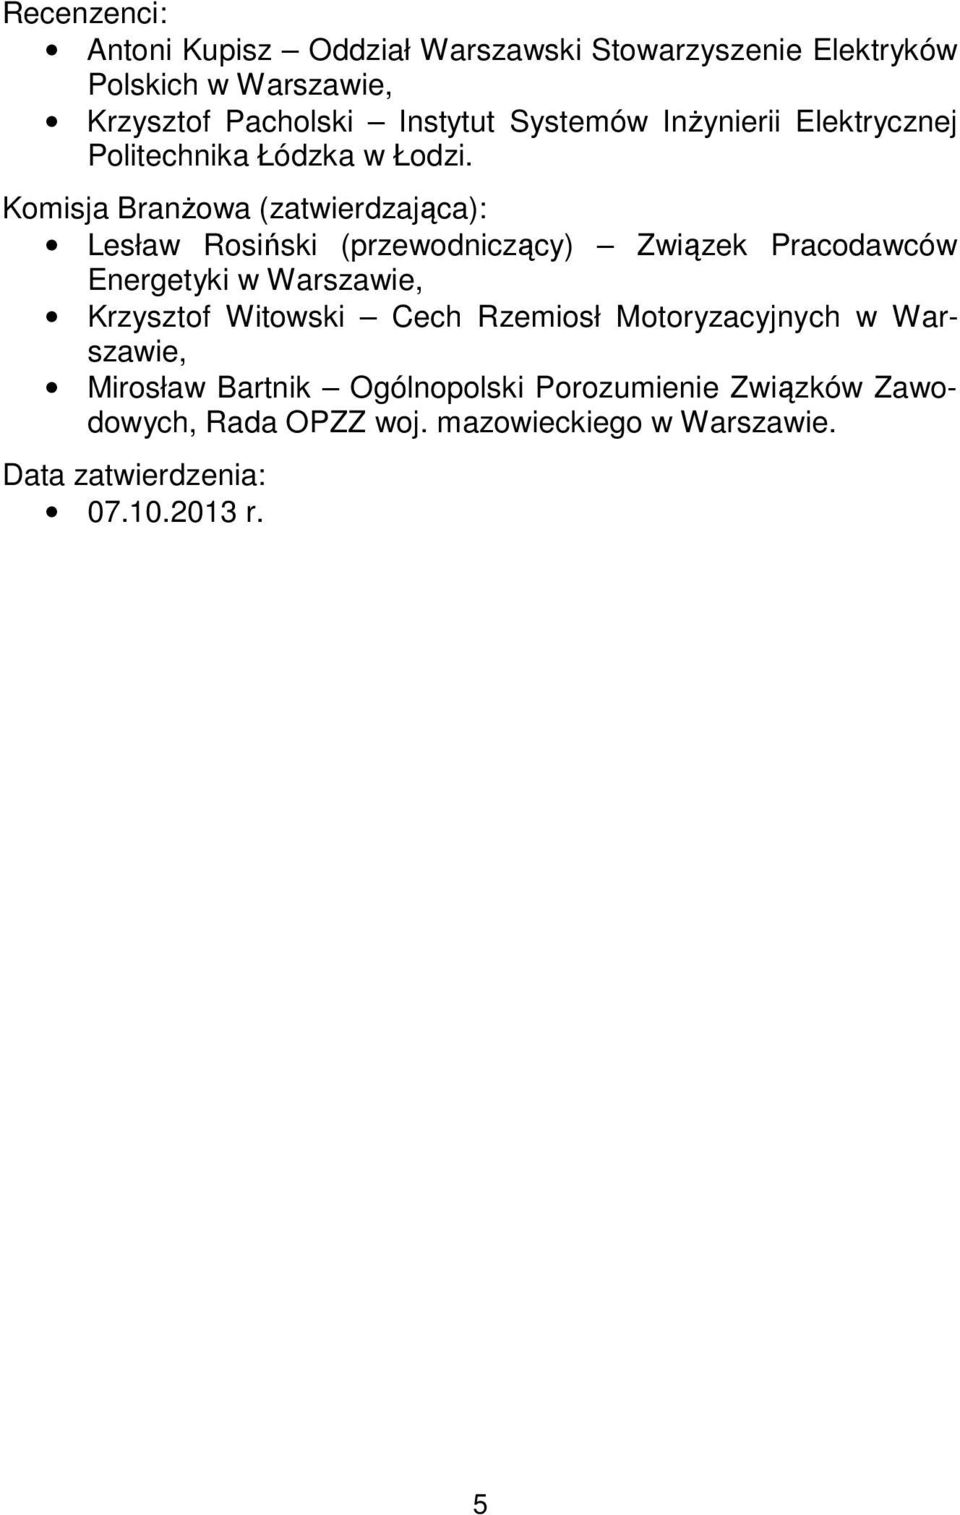 Komisja Branżowa (zatwierdzająca): Lesław Rosiński (przewodniczący) Związek Pracodawców Energetyki w Warszawie, Krzysztof